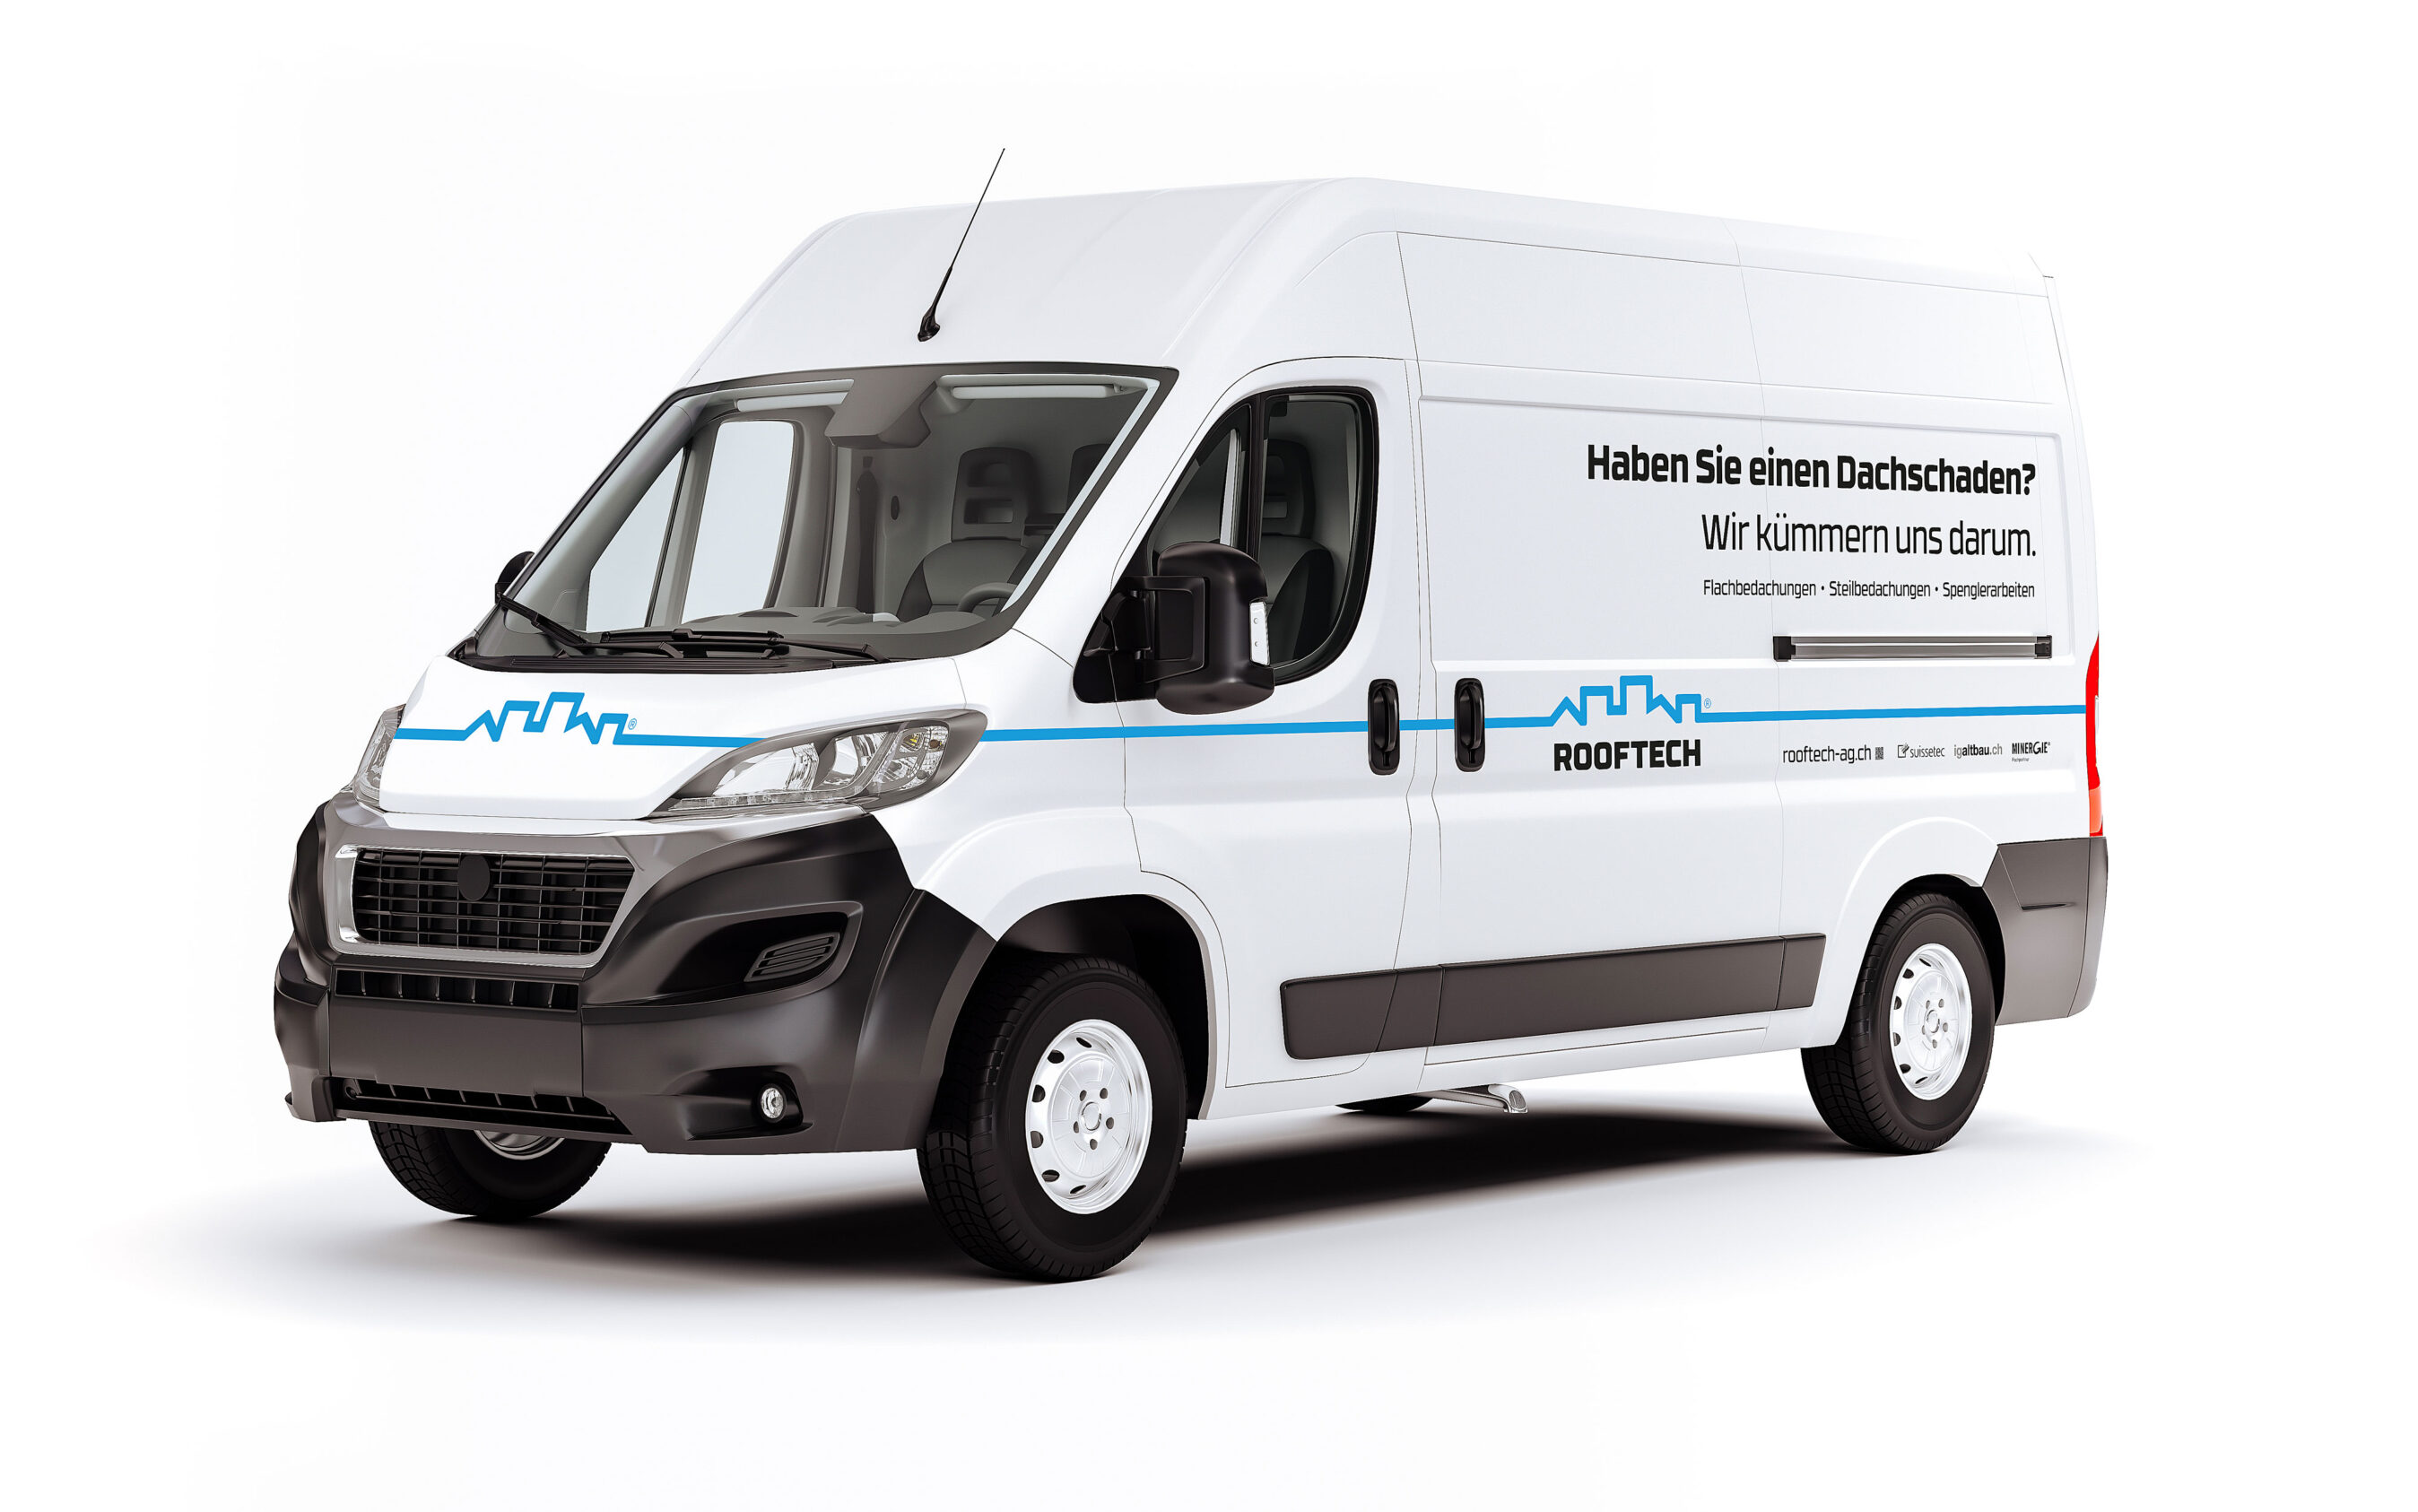 Fahrzeugbeschriftung der Firma Rooftech AG. Weisser Bus beschriftet mit dem Firmen-Logo, Branding-Linie, Claim und Kontaktdaten.